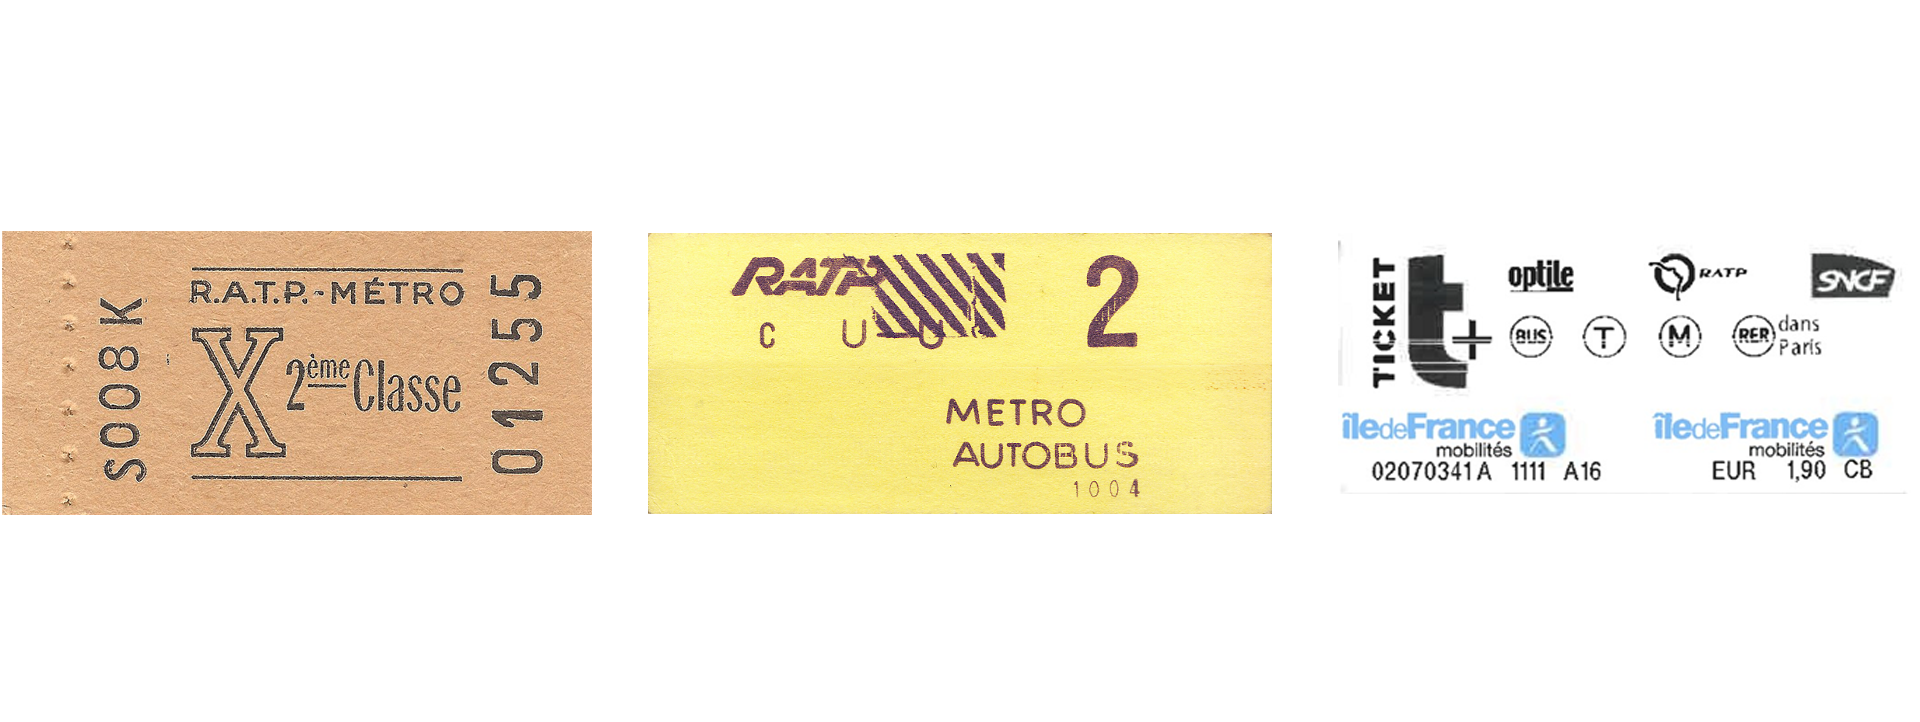 tickets metro paris